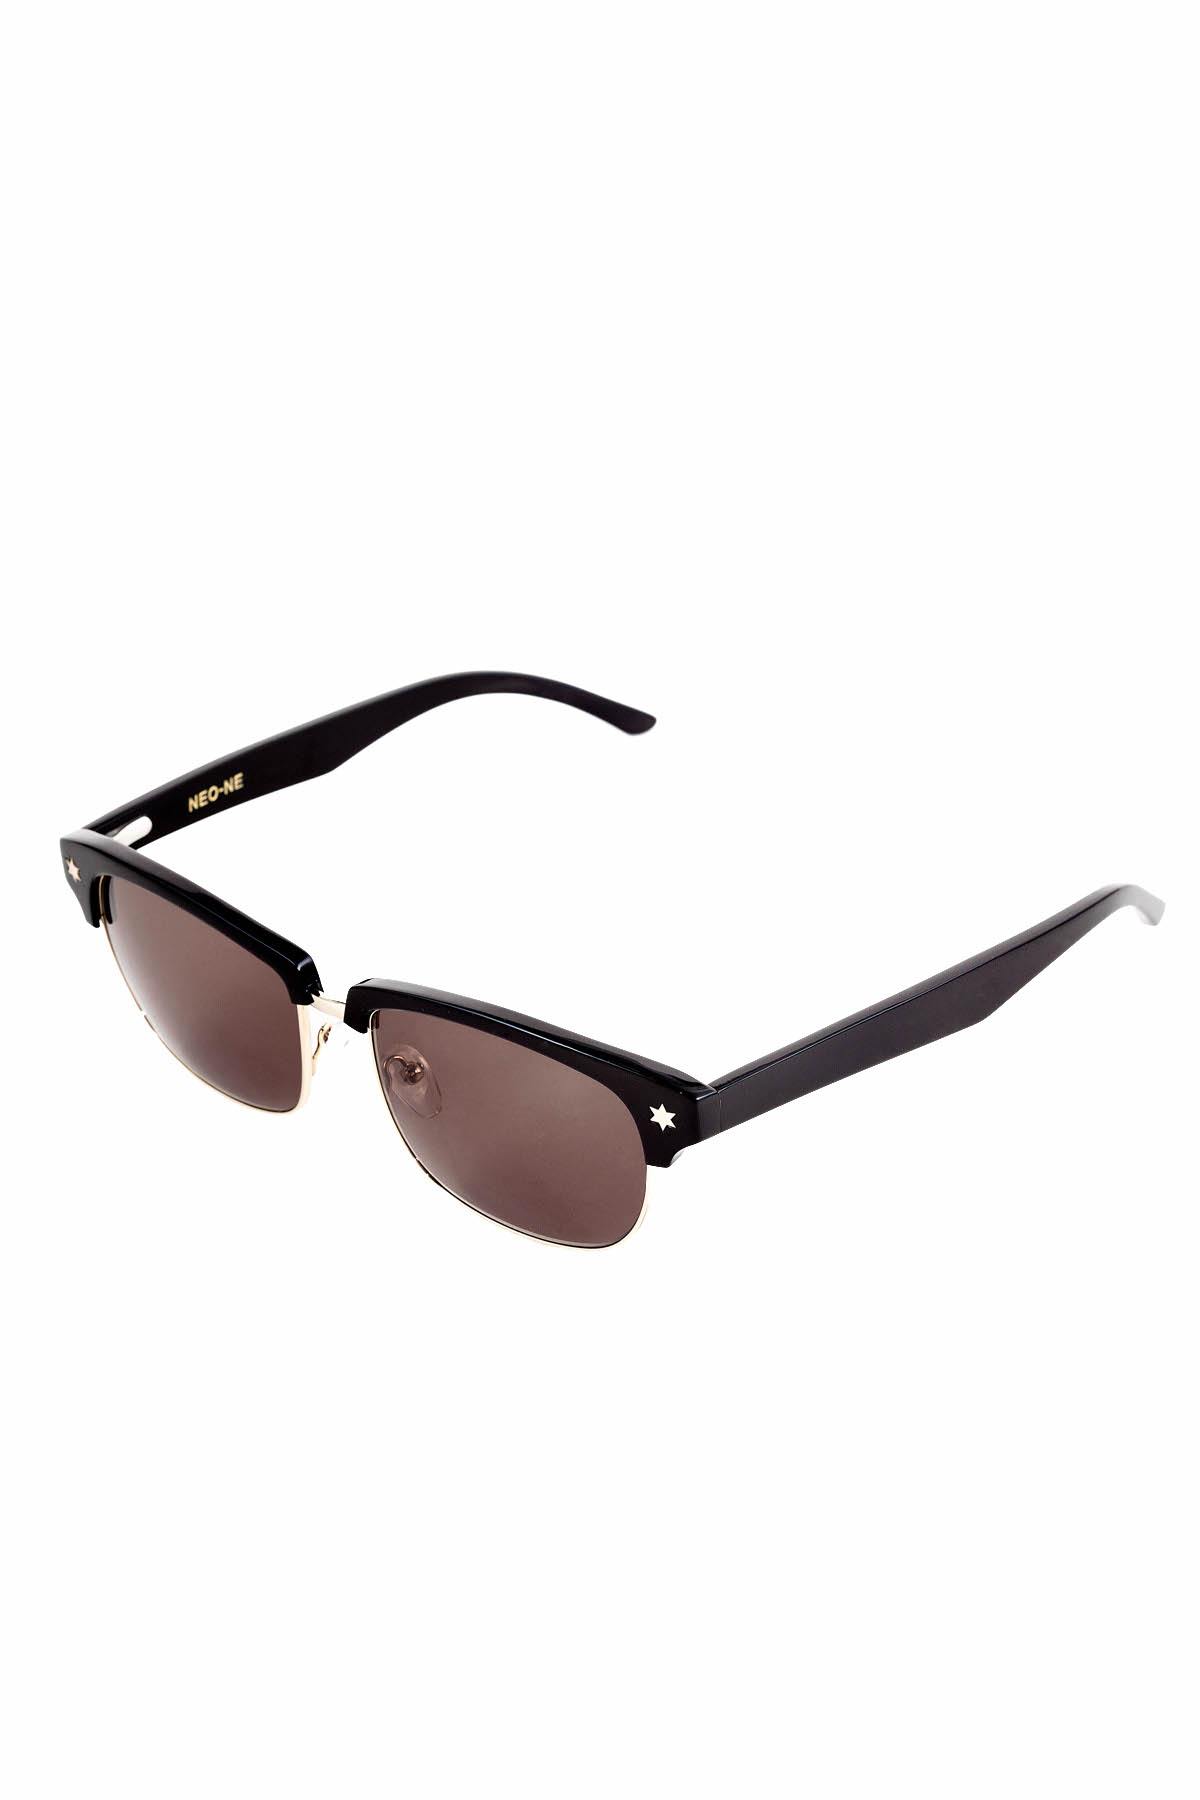 Neo-Ne Ivory Black U+2721 Sunglasses